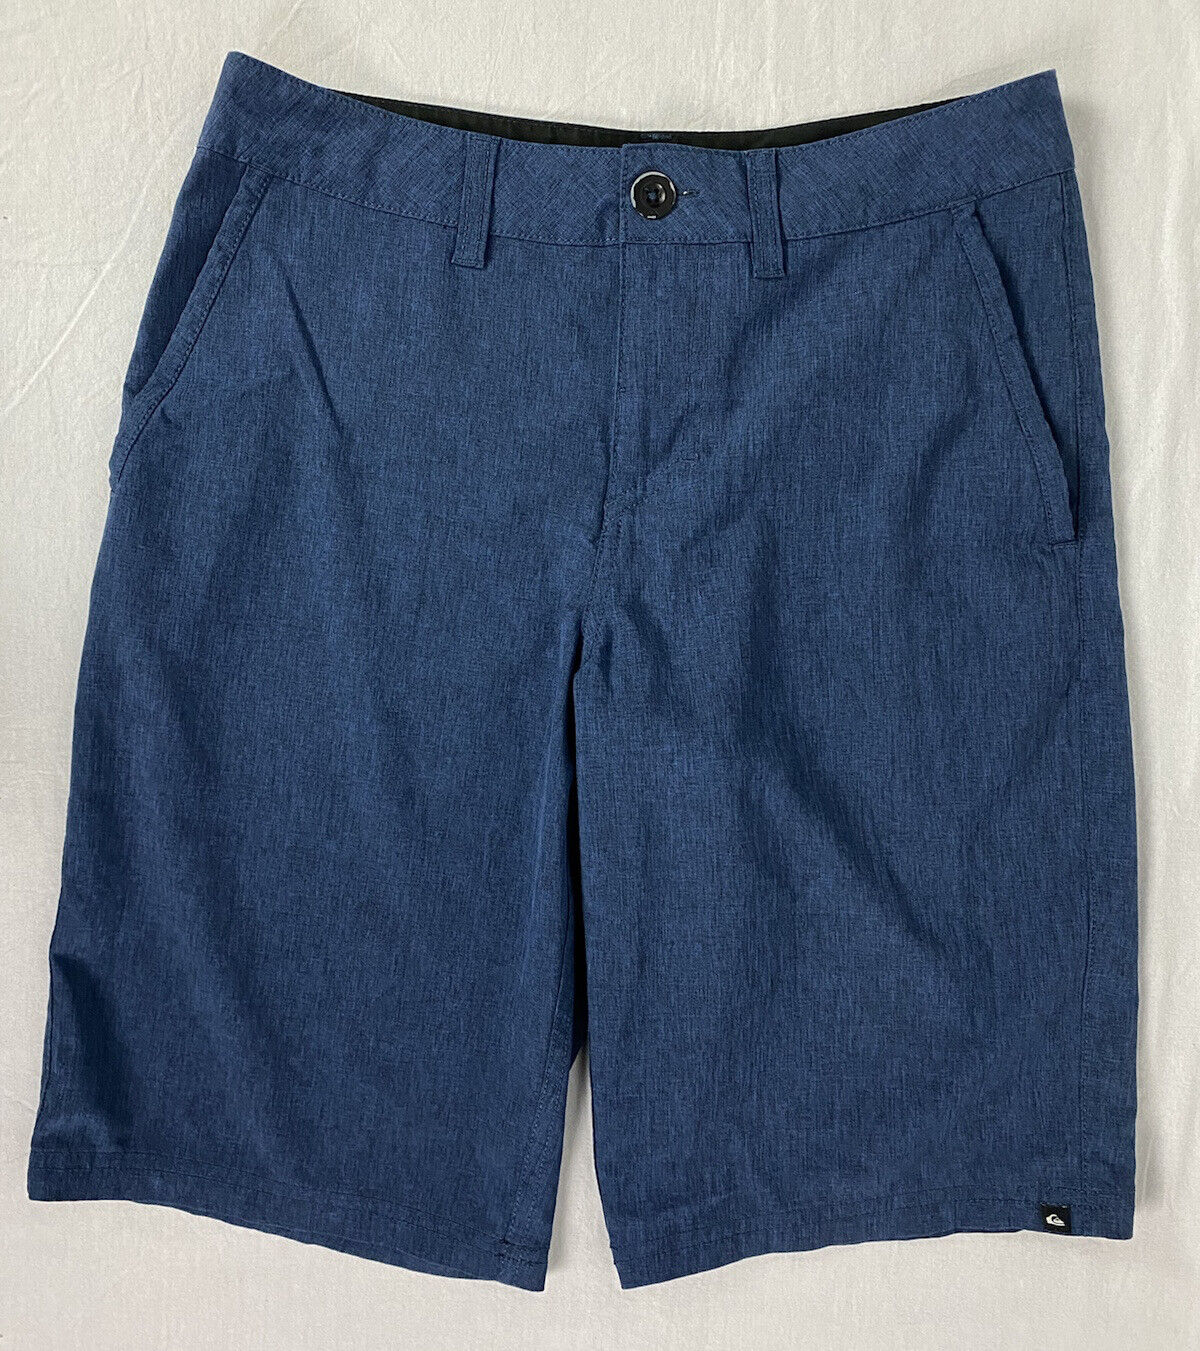 Quicksilver Amphibians Blue Shorts, Men's Size 28 - Gem